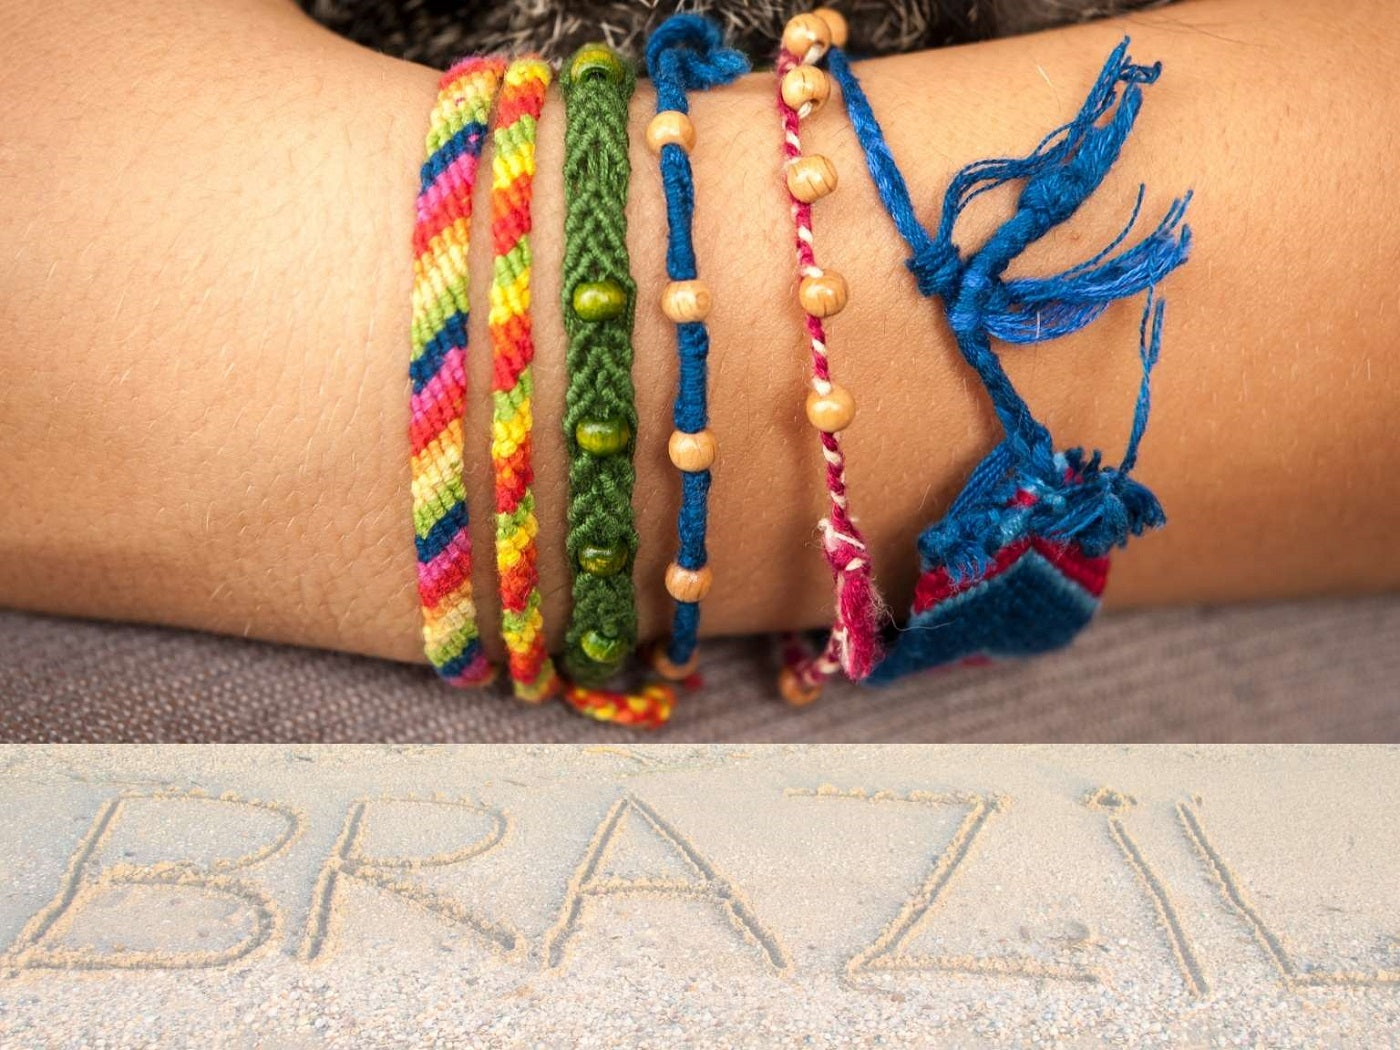 Kit je crée des bracelets brésiliens